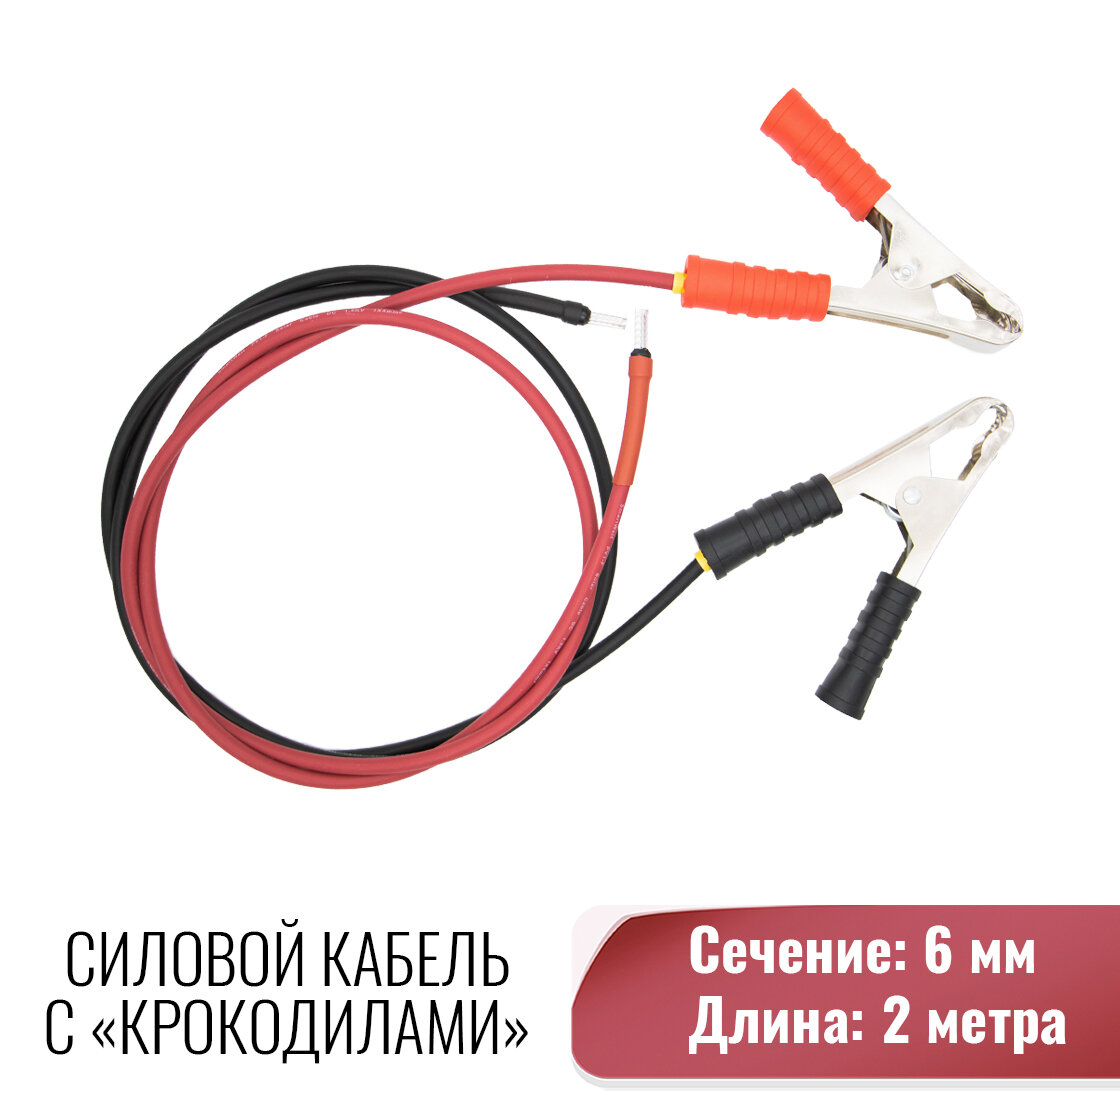 Силовой кабель для подключения контроллера заряда к АКБ, Сечение 6 мм.